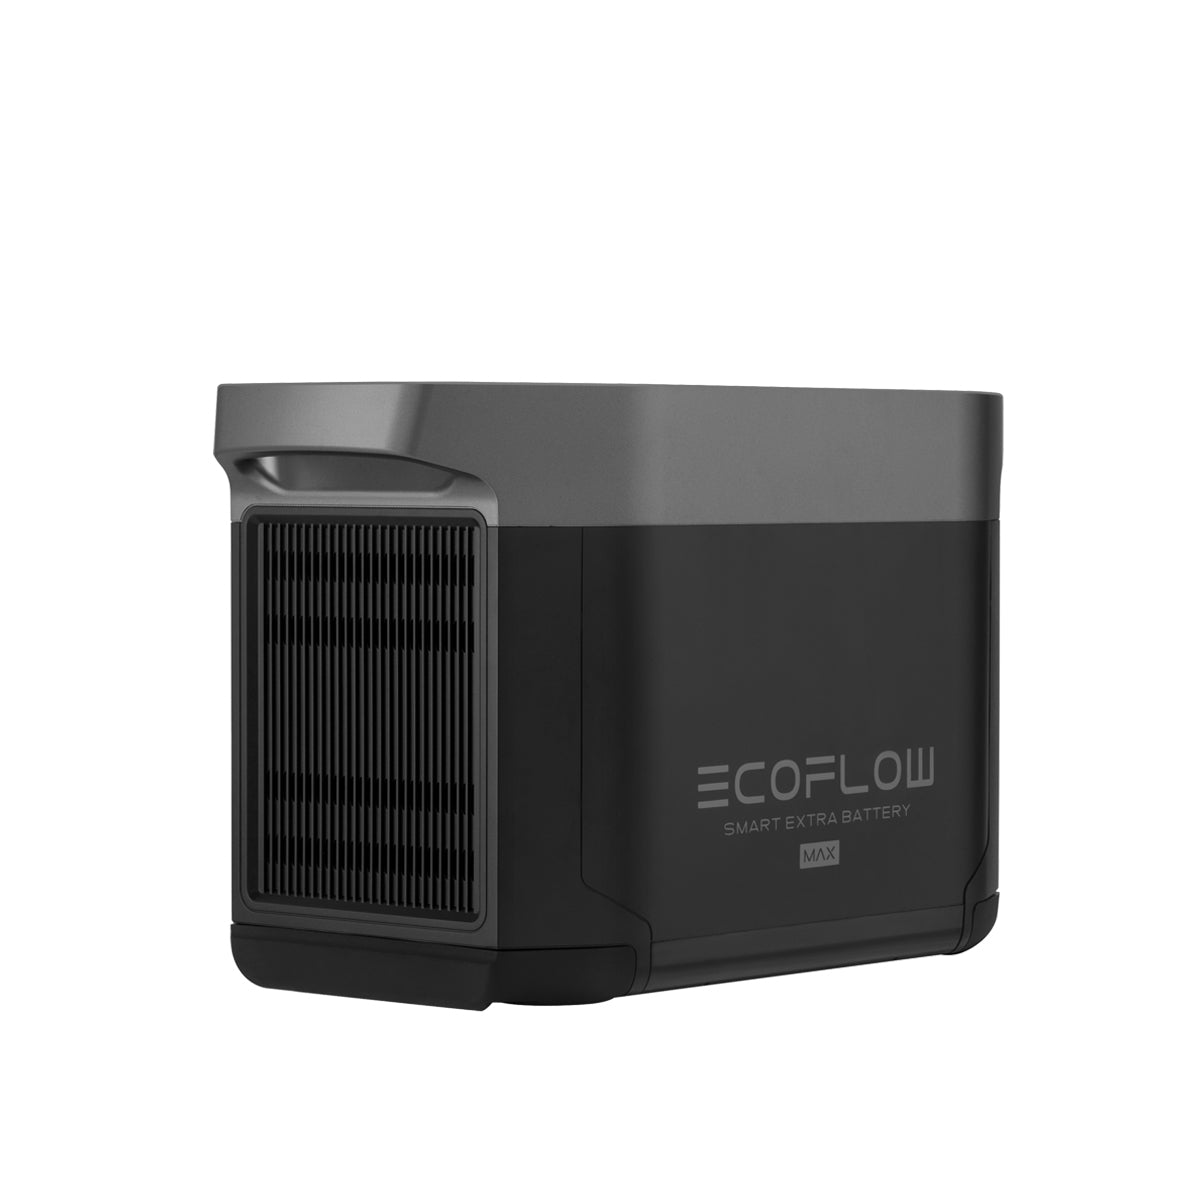 EcoFlow Extrabatteri till DELTA 2 och Max